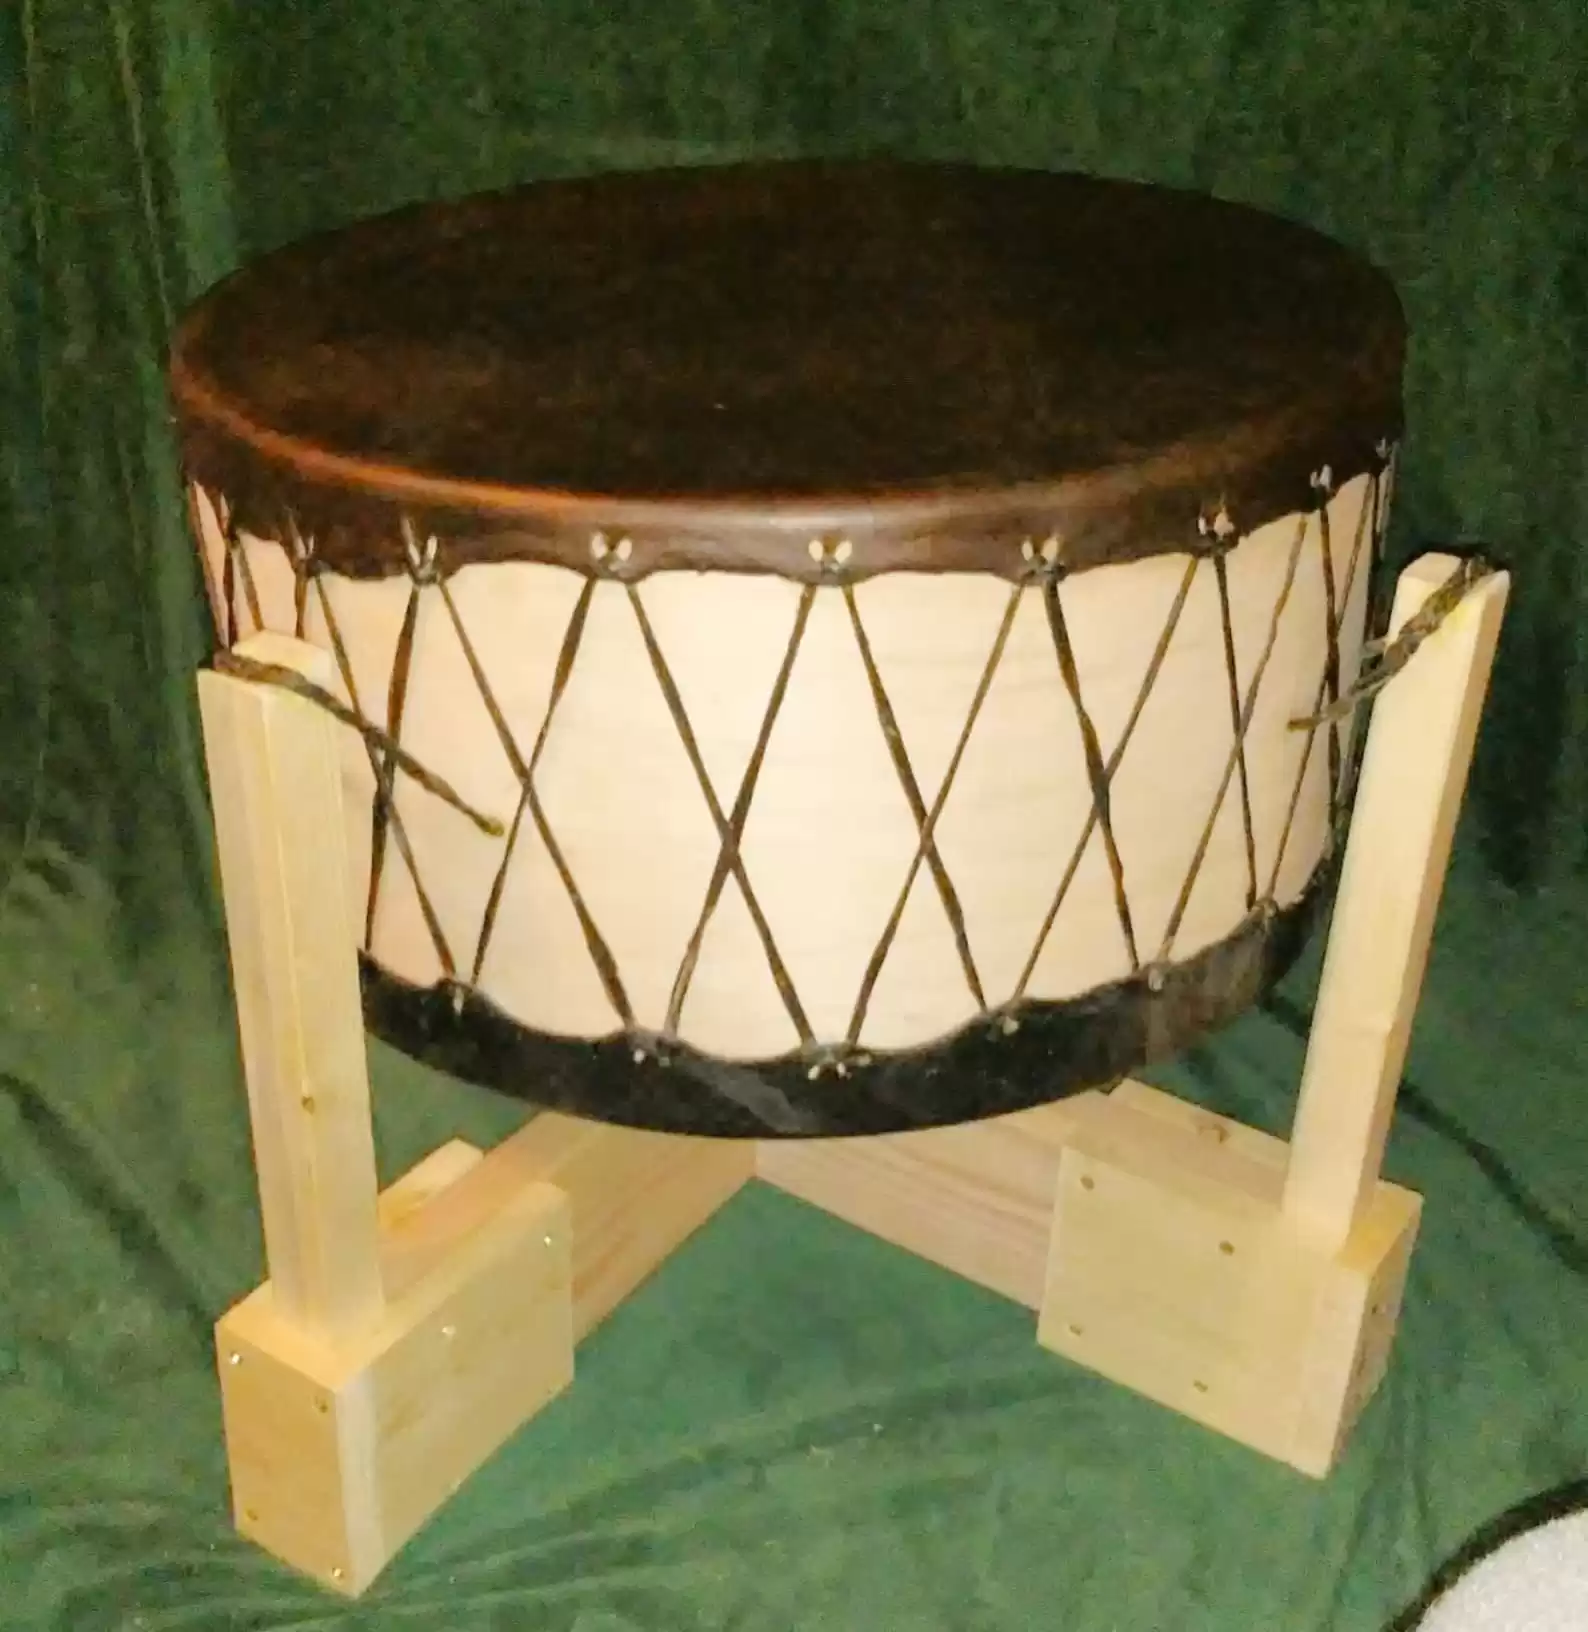 Ceremonial Drum Kit